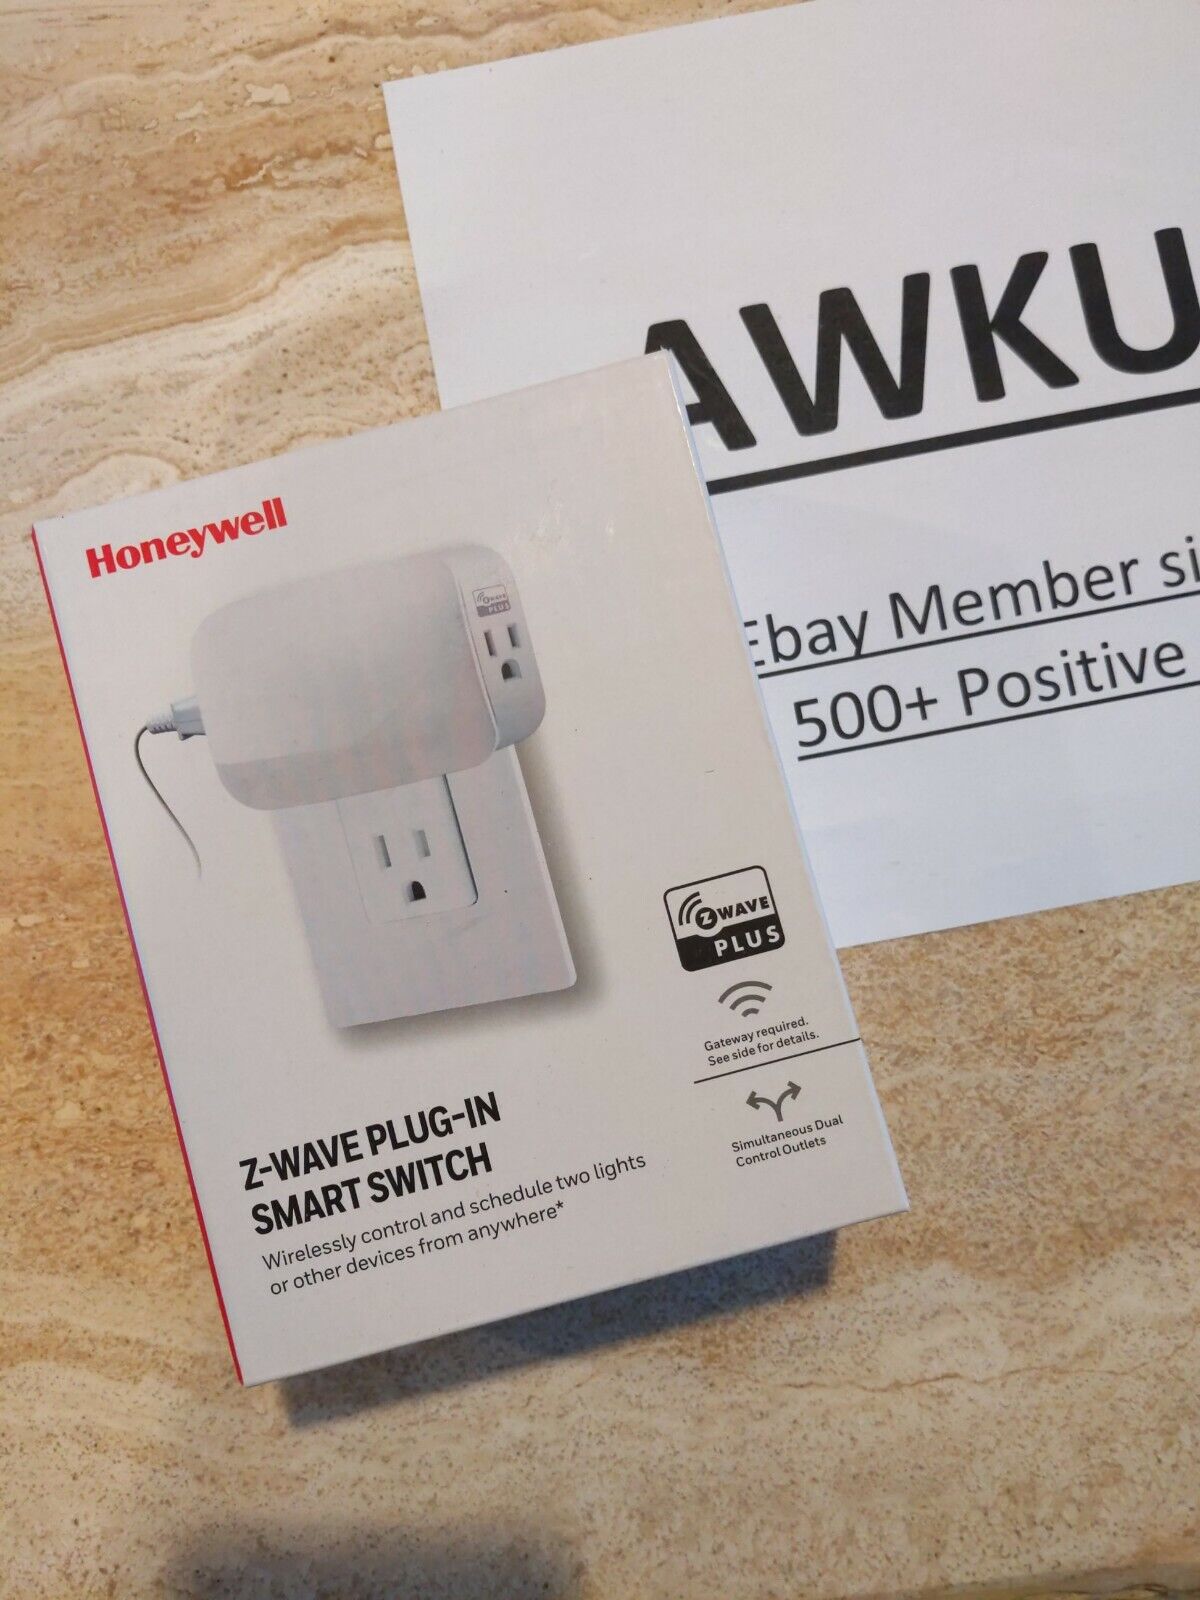 Honeywell Z-Wave Plug-in Smart Switch